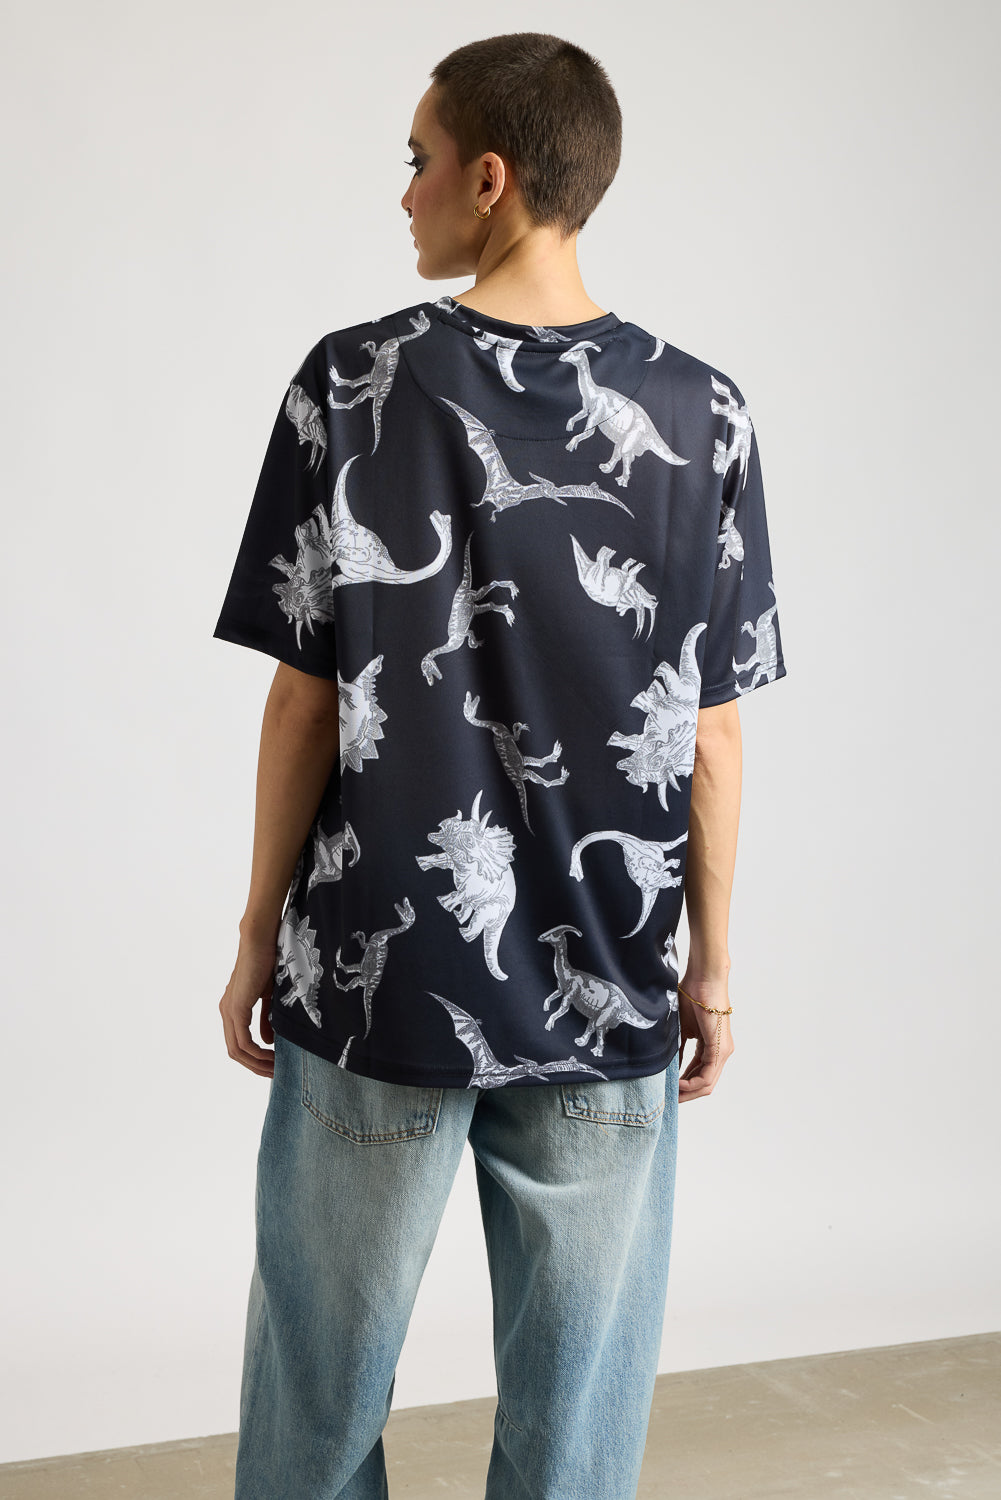 AOP Women's T-shirt - Dinosaurs